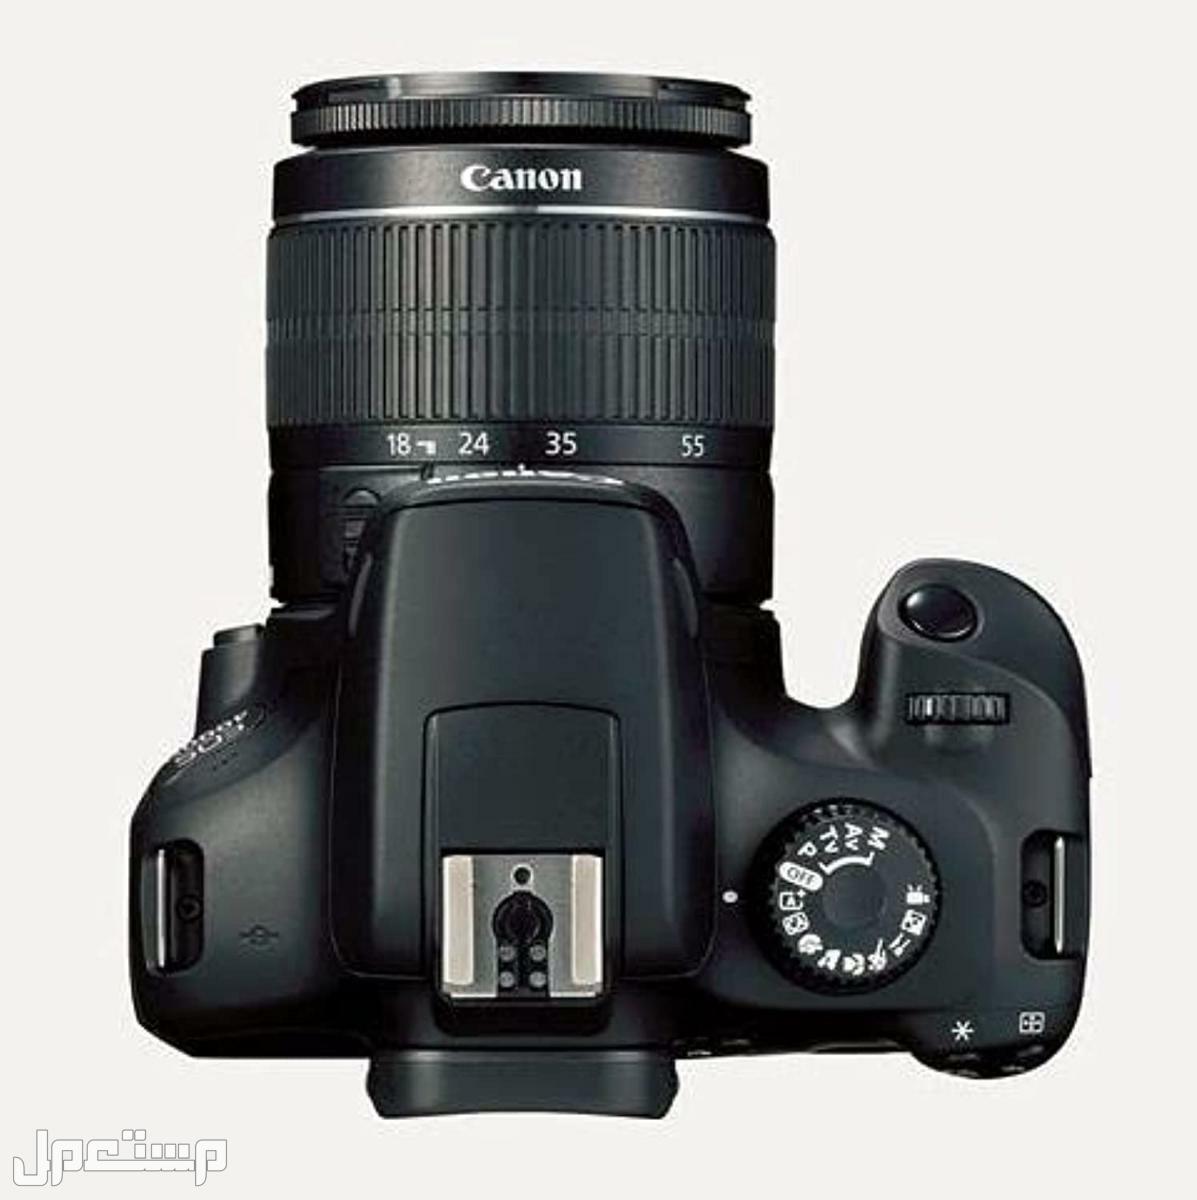 مواصفات وأهم مميزات وأسعار أرخص كاميرا تصوير من كانون في ليبيا كاميرا كانون  D 4000 بعدسة احادية